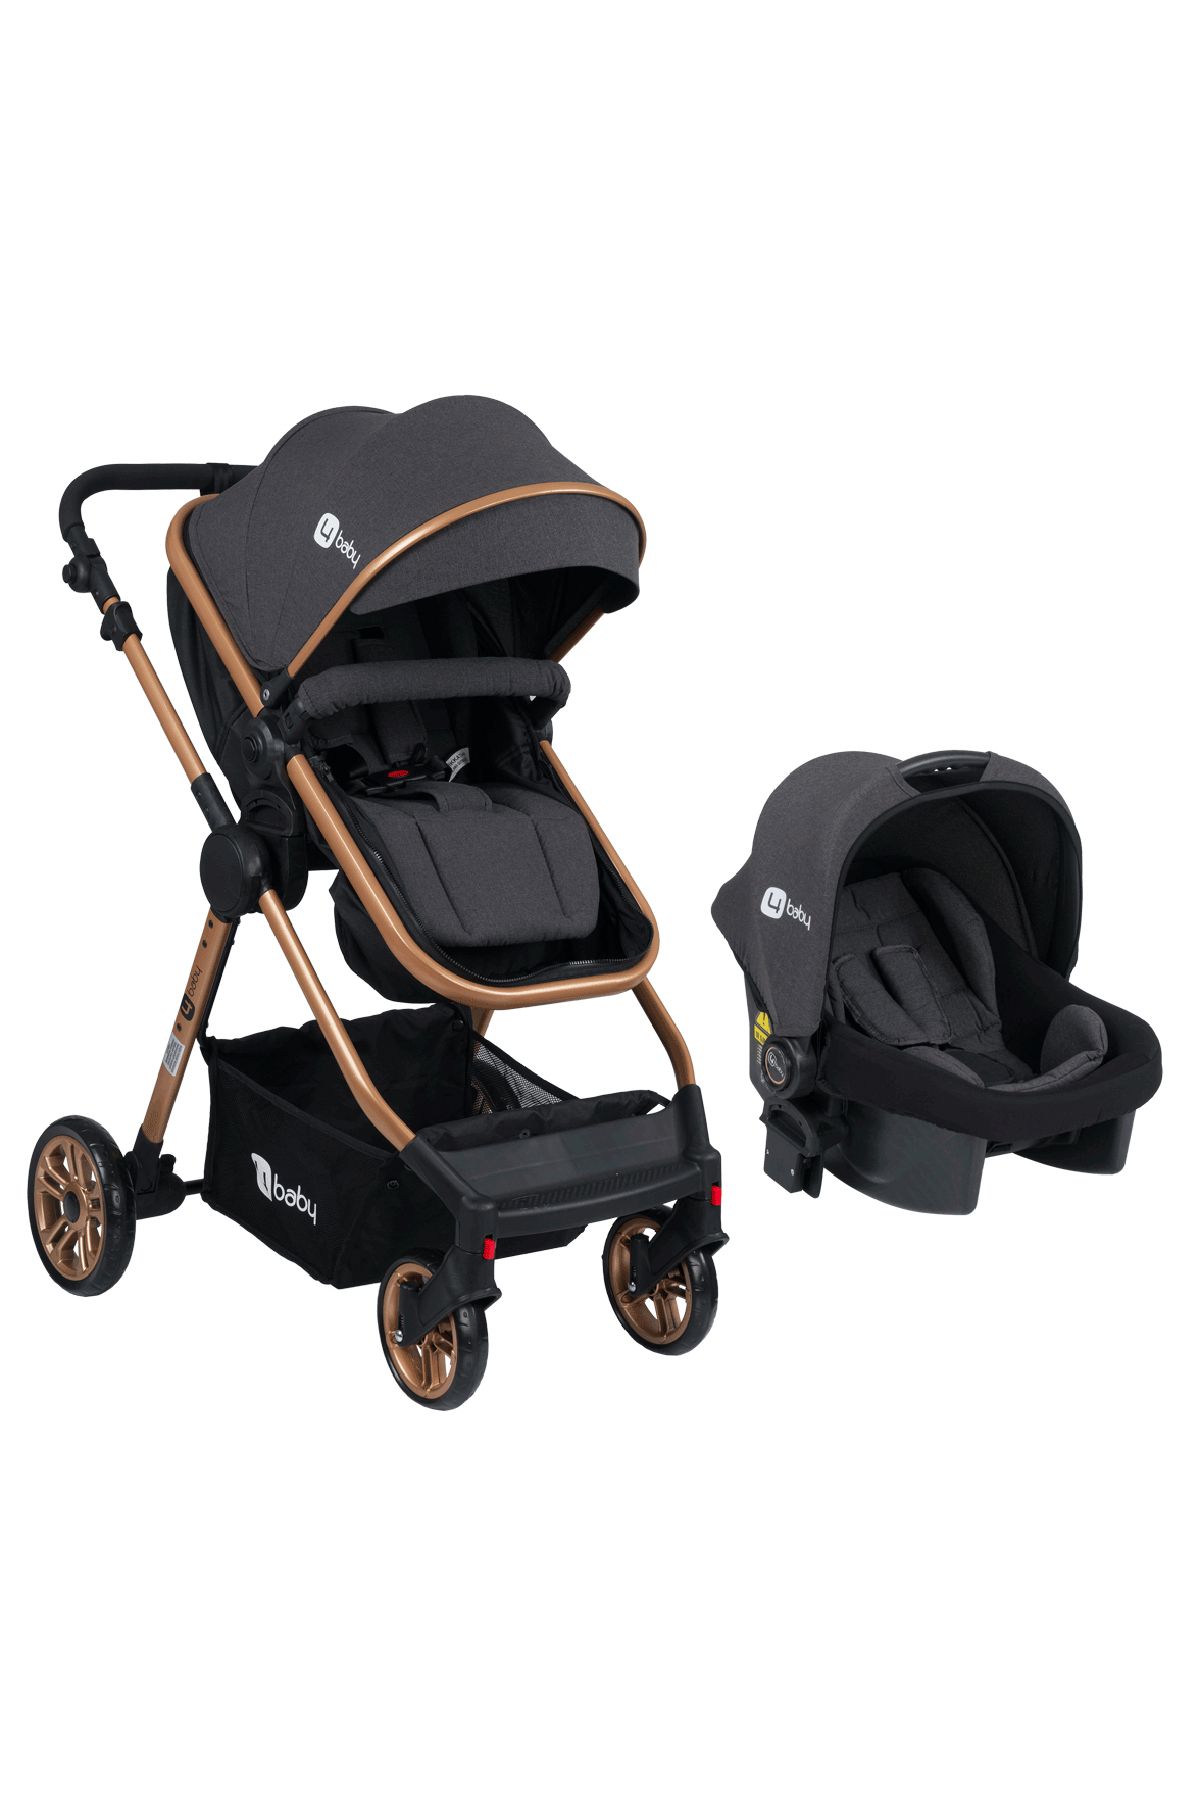 4 Baby Comfort Gold-Antrasit  Travel Sistem Bebek Arabası Seyahat Sistem Puset, Taşıma Koltuğu, Yağmurluk